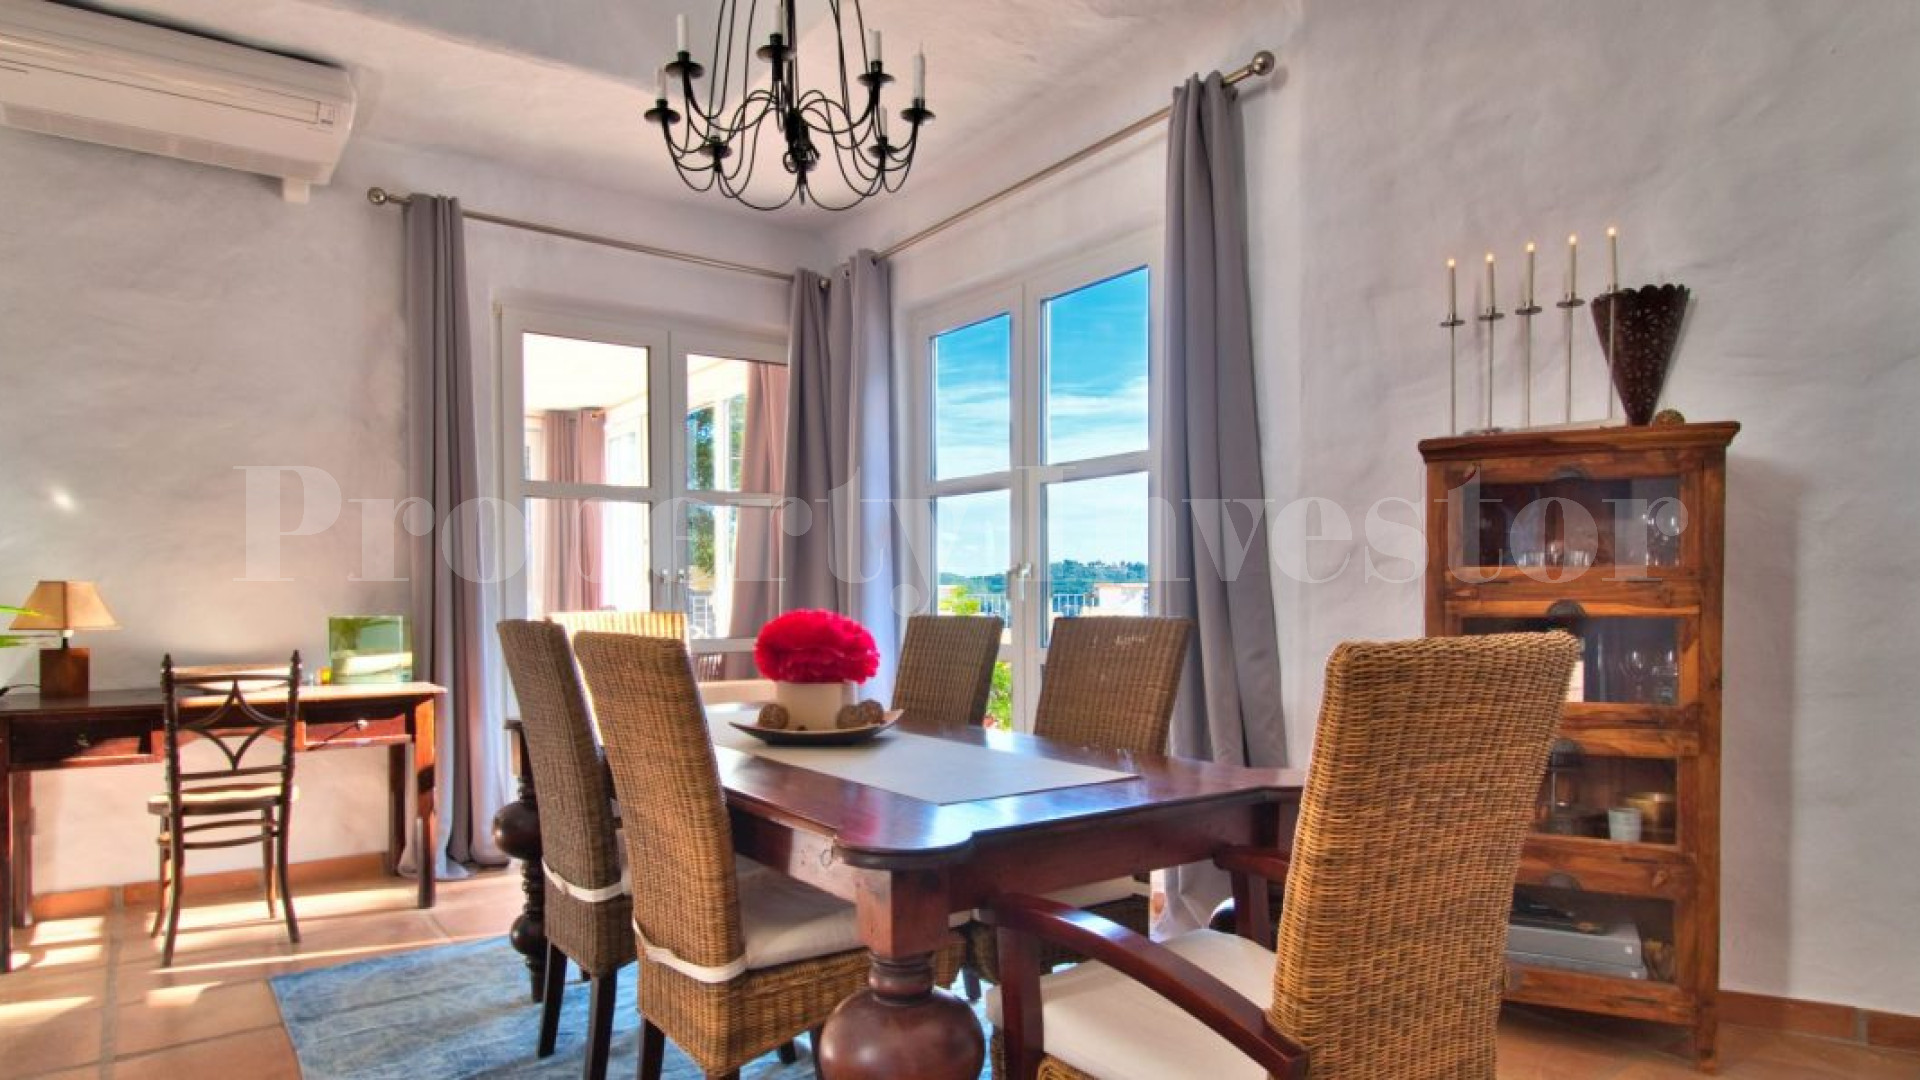 4 Bedroom Mediterranean Sea View Villa in Camp de Mar